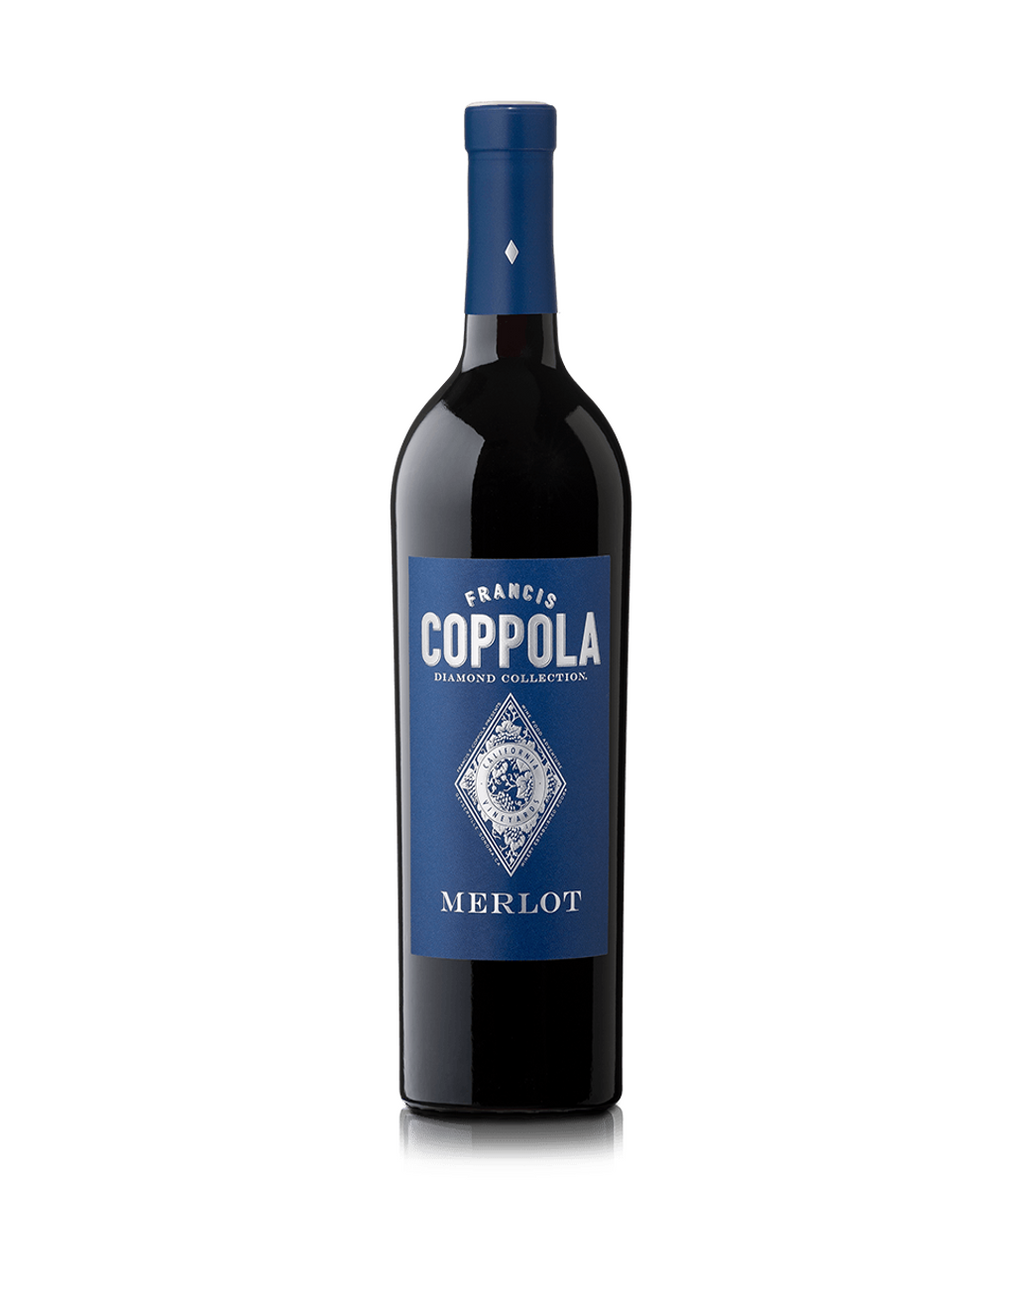 2017年美国柯波拉钻石精选美乐干红葡萄酒  Coppola Diamond Collection Merlot 2017